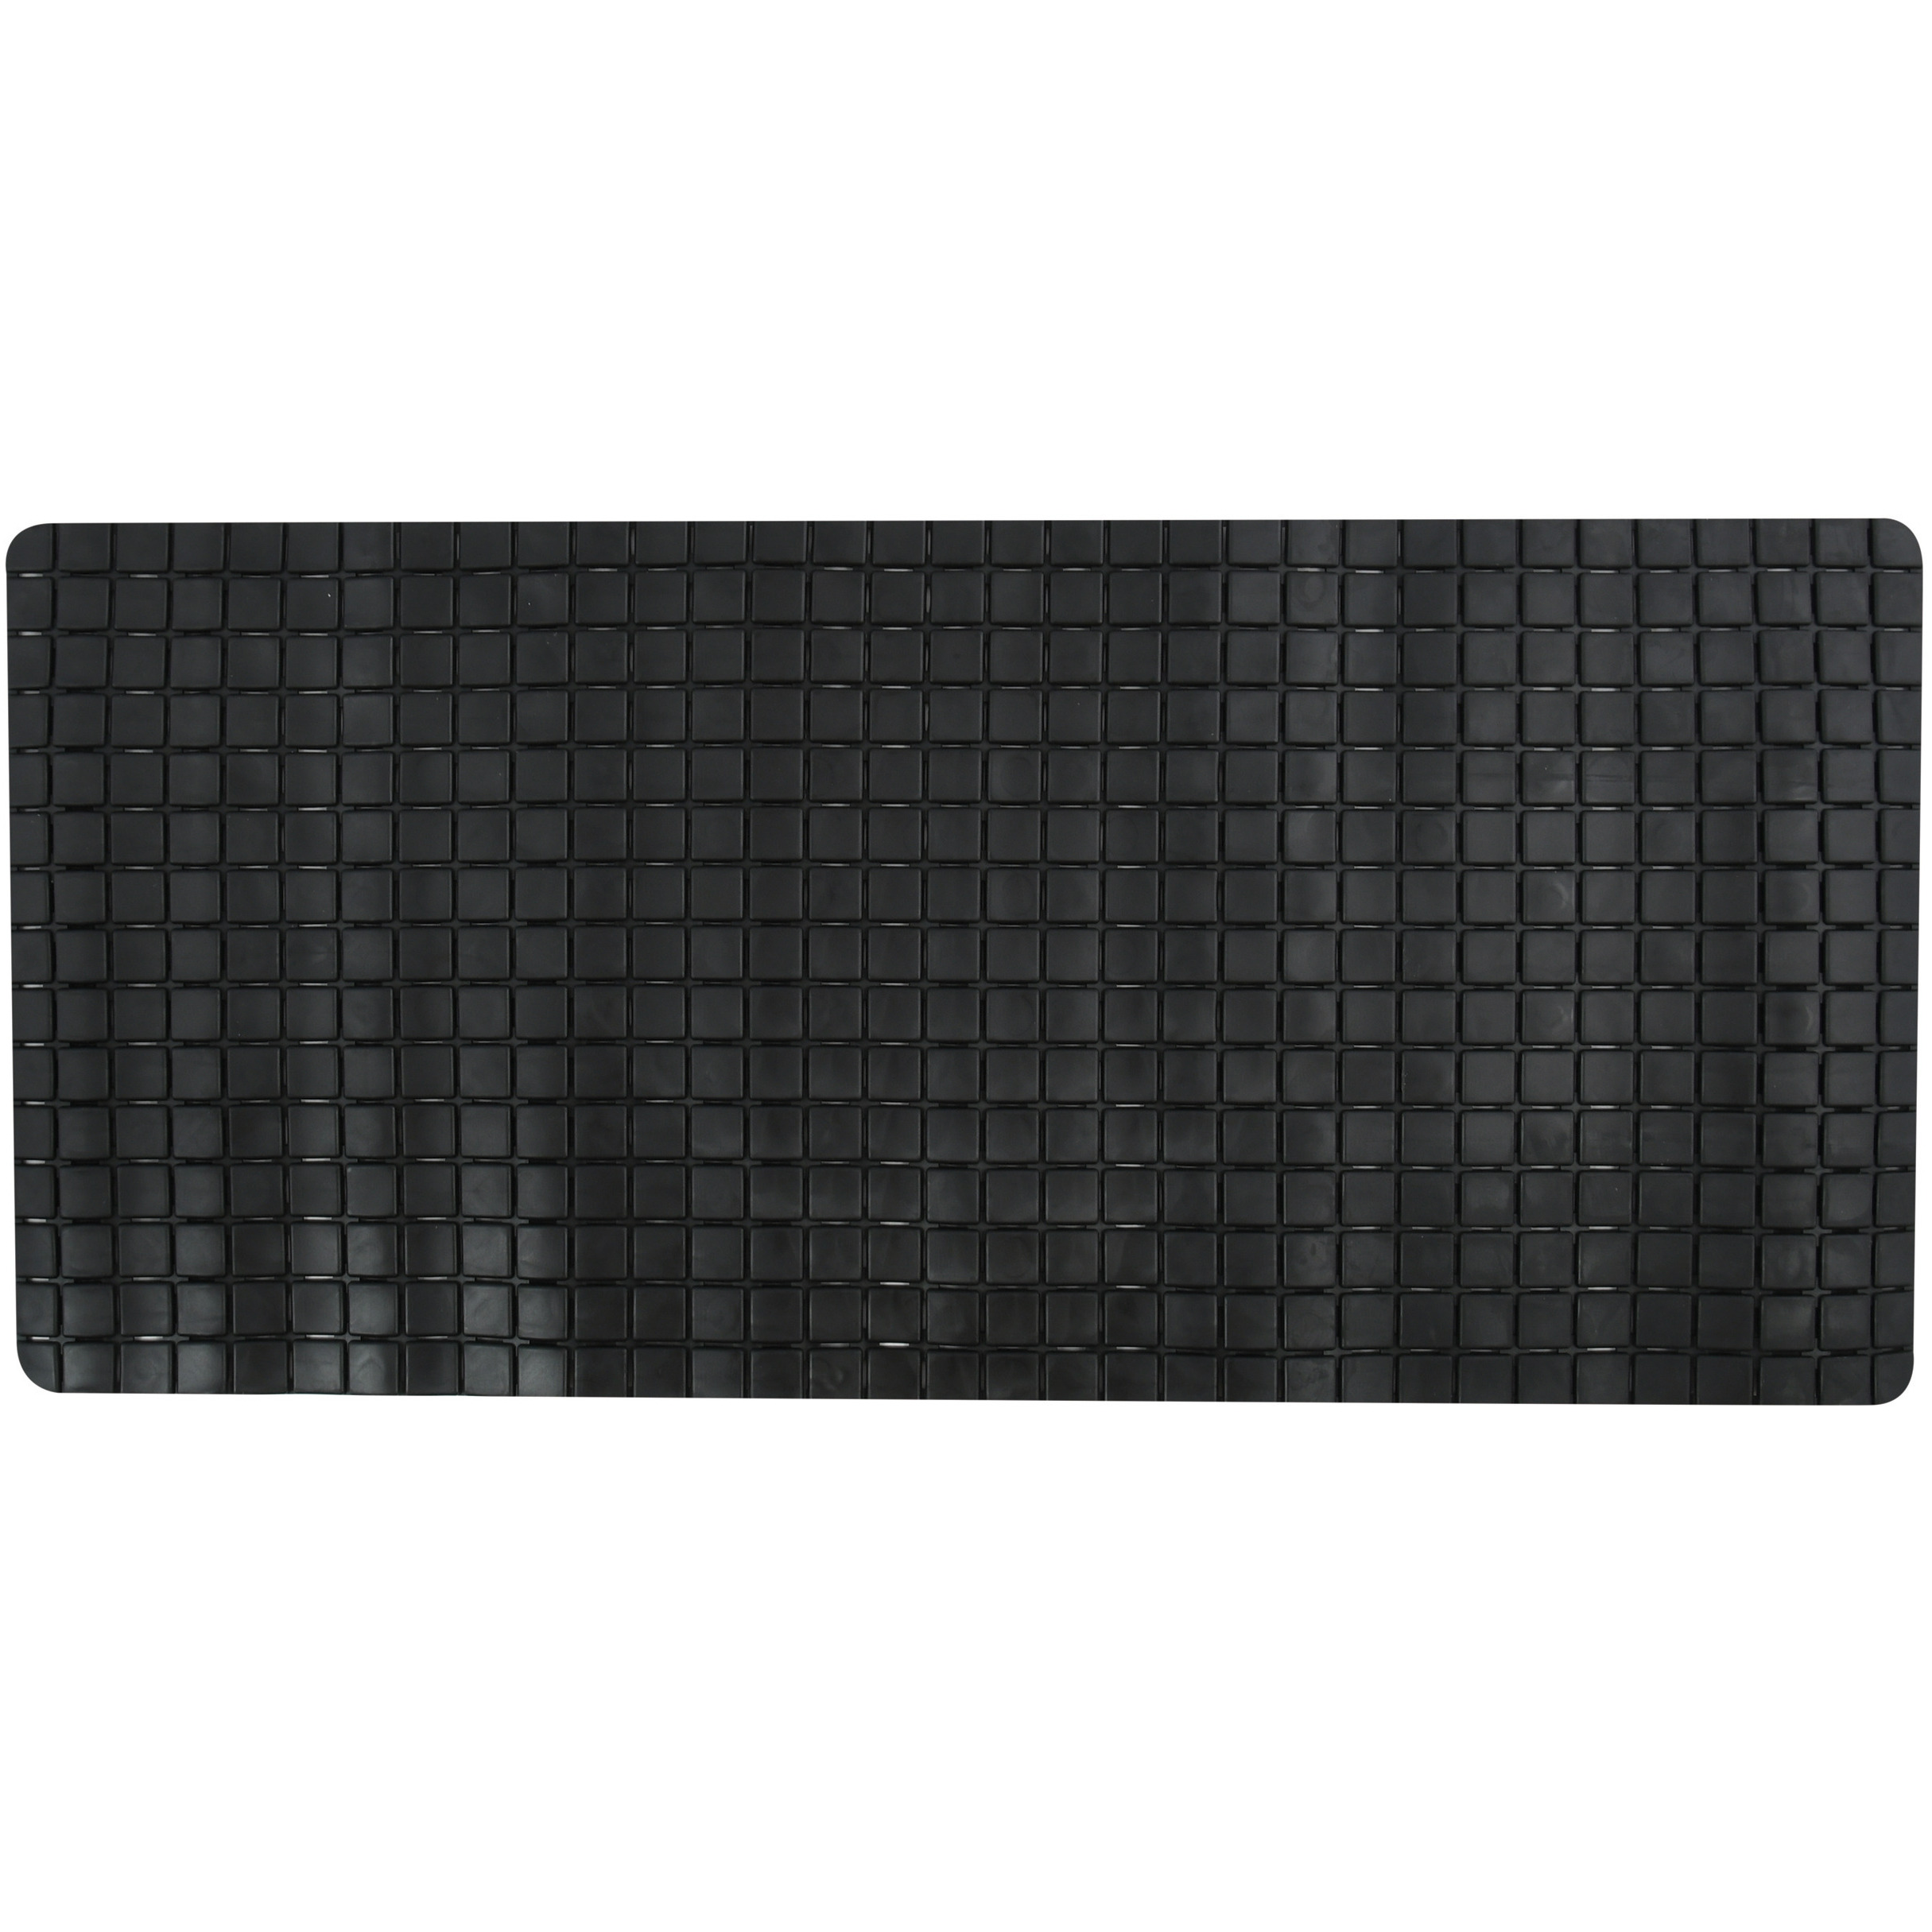 Douche-bad anti-slip mat badkamer rubber zwart 76 x 36 cm rechthoek